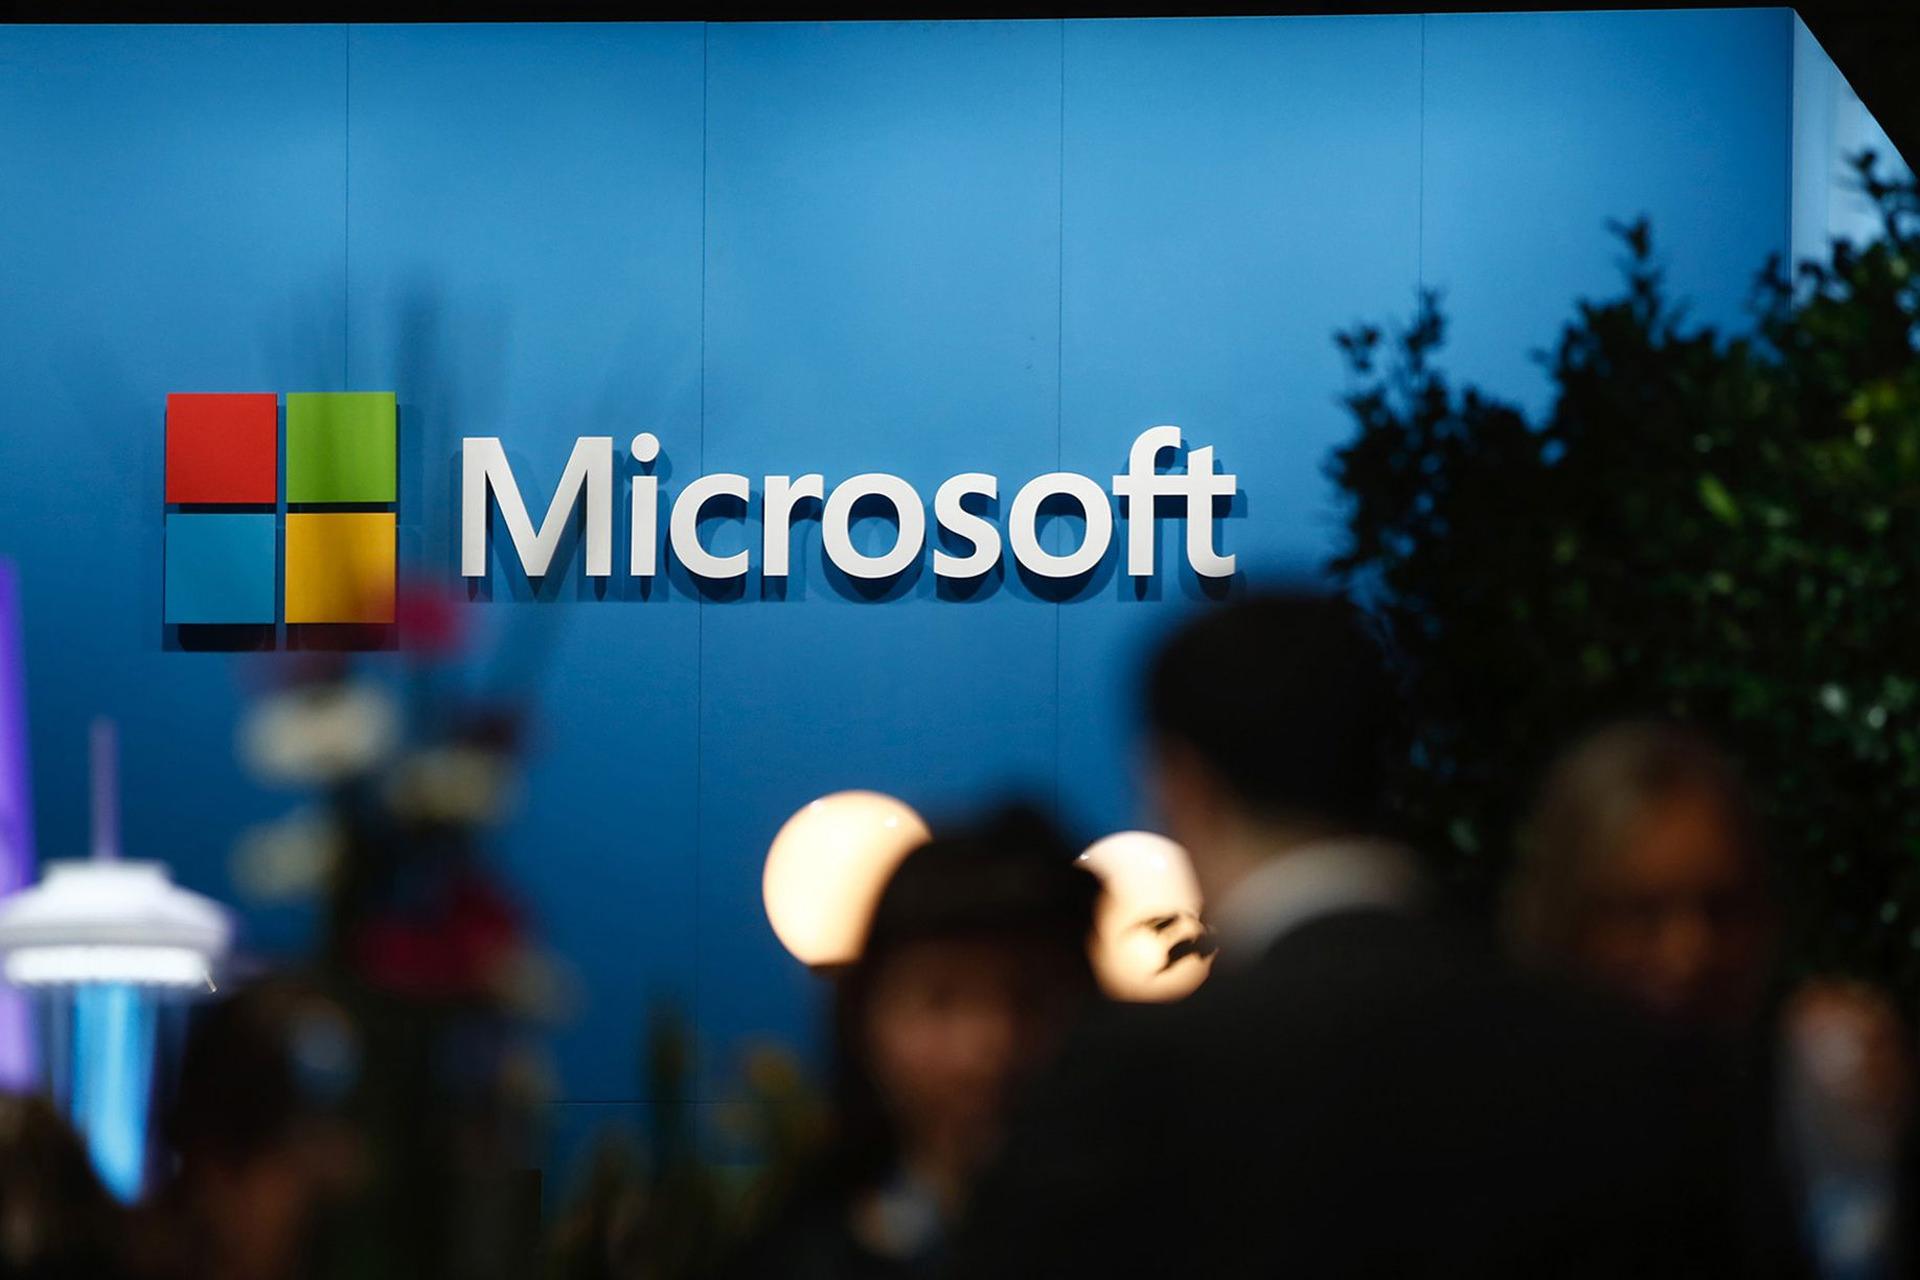 لوگو مایکروسافت / Microsoft روی دیوار آبی محیط داخلی شلوغ